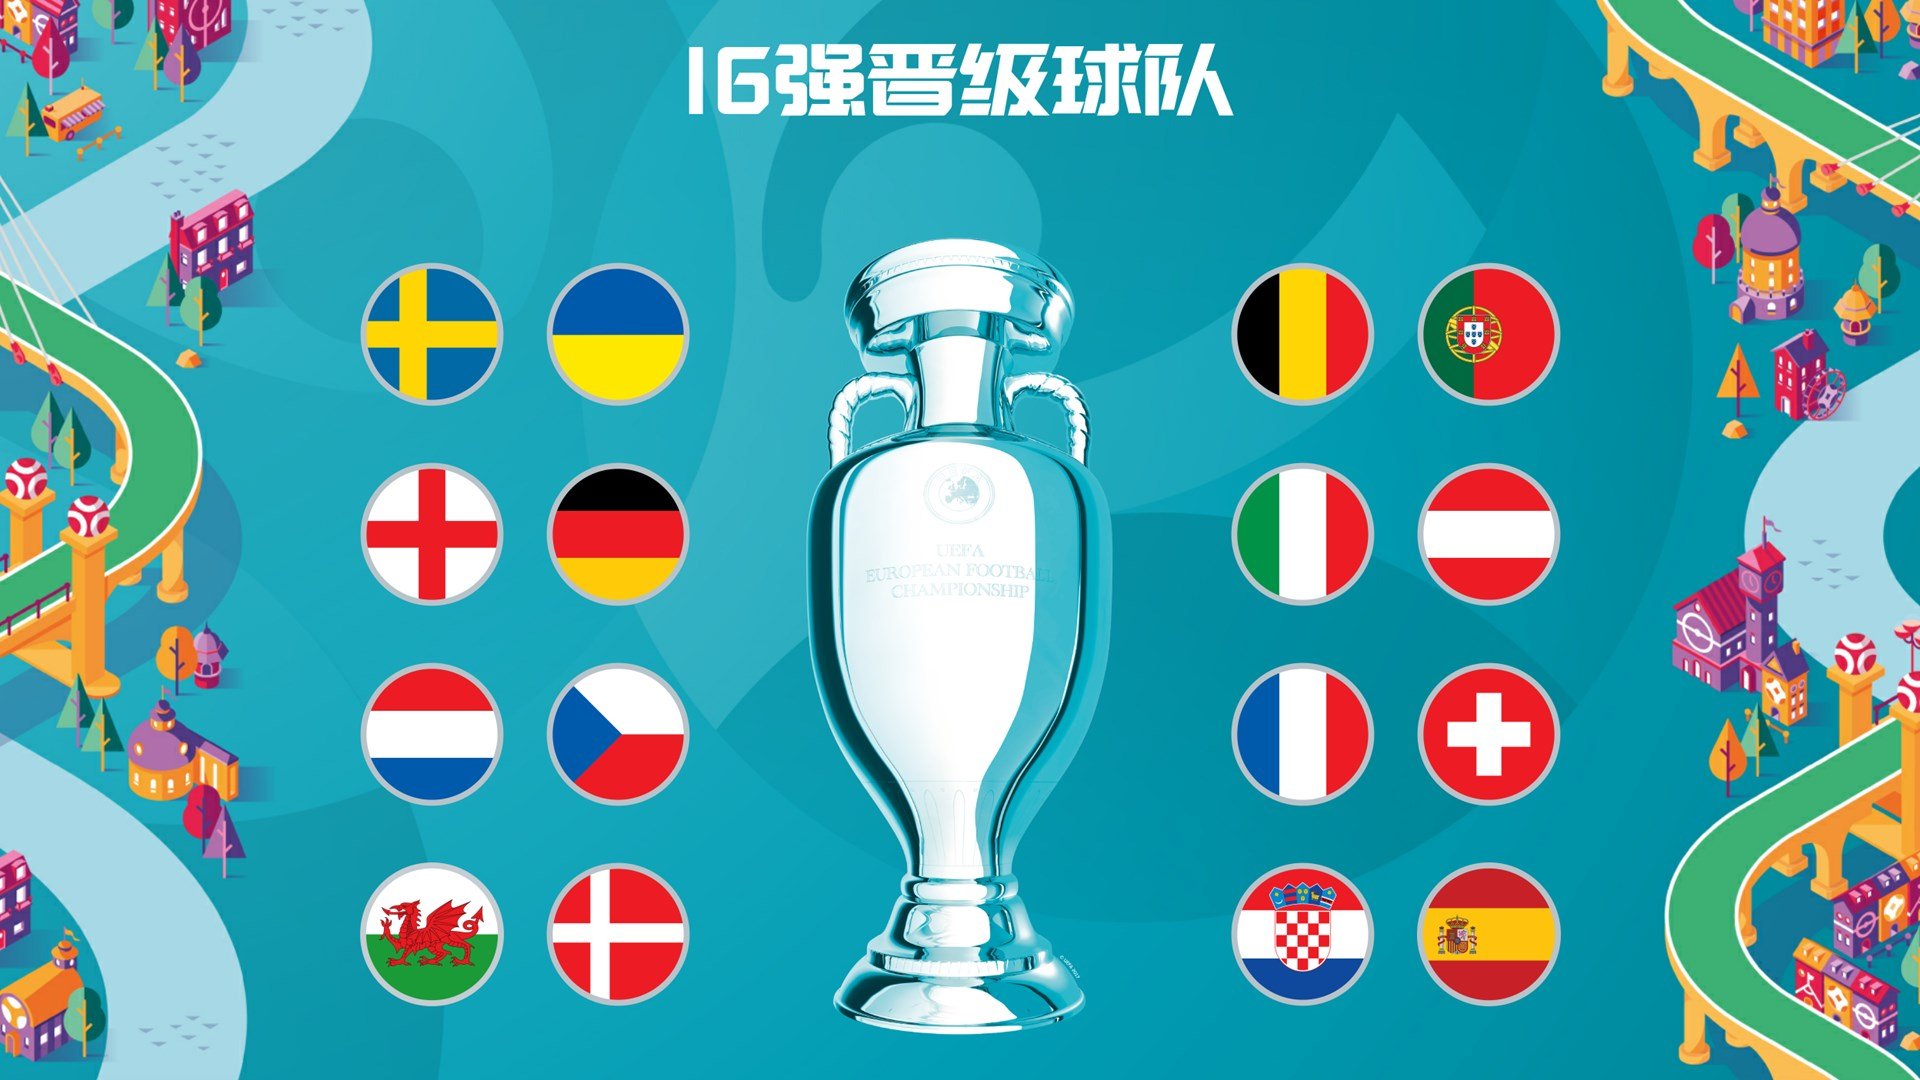 2020年欧洲杯预选赛A组将展开第9轮的争夺